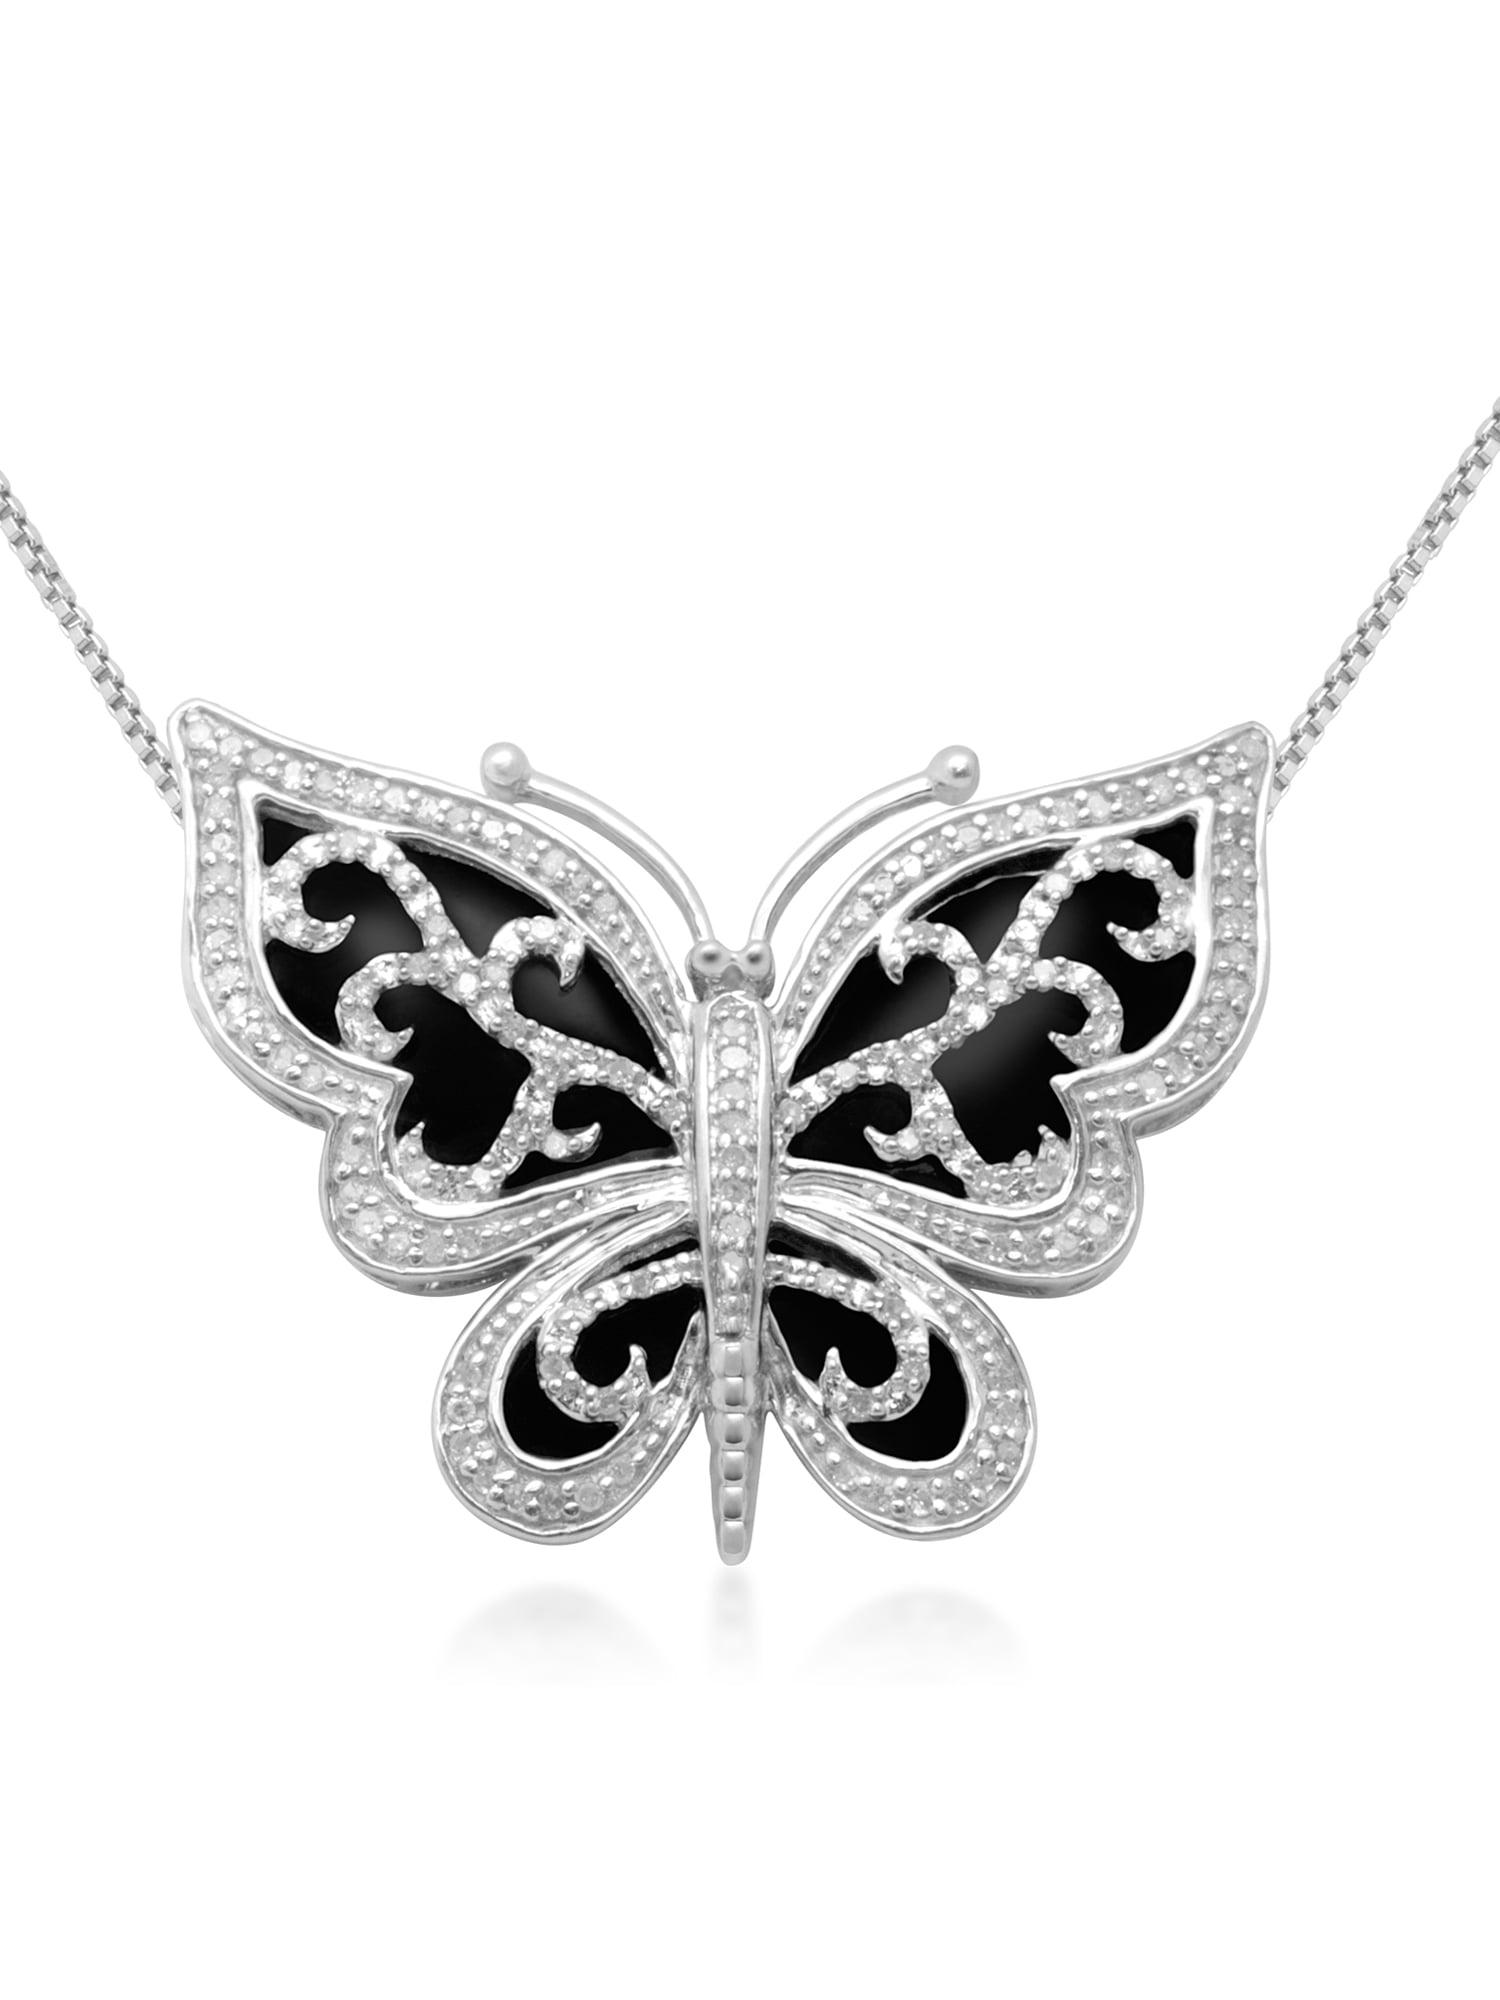 1/3 Carat T.W. Diamond Butterfly Pendant in Sterling Silver